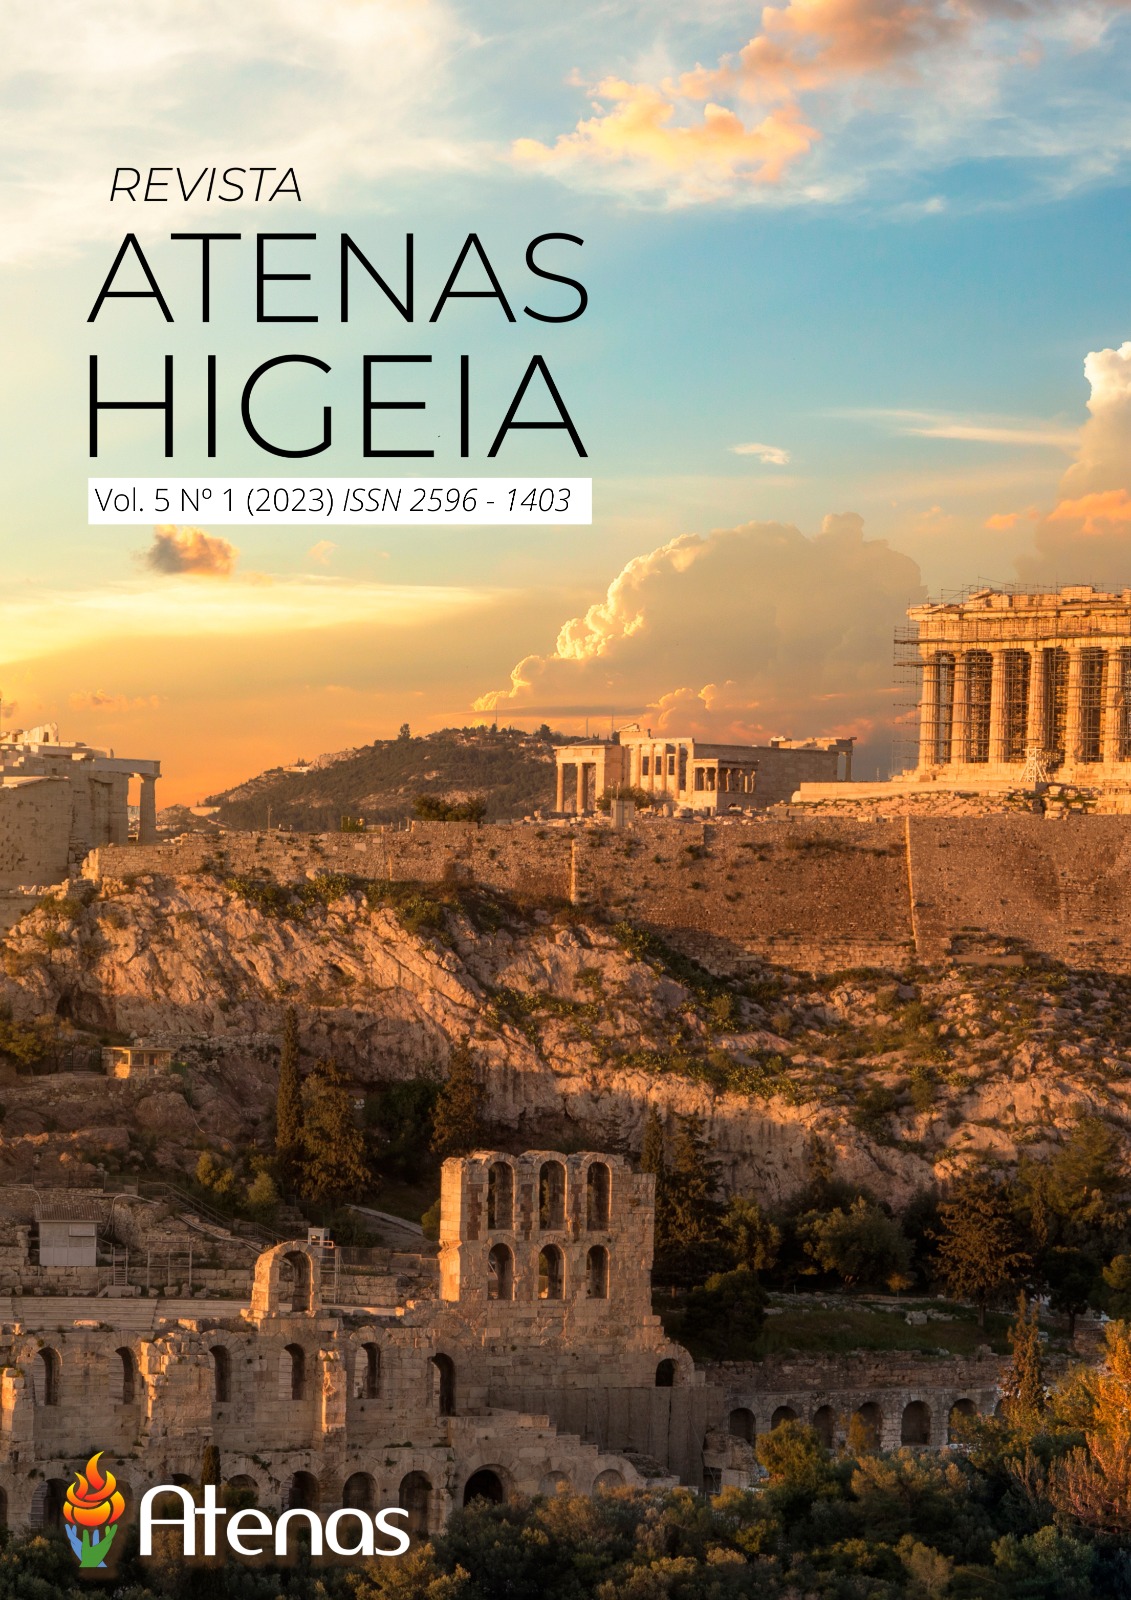 					Visualizar v. 5 n. 1 (2023): Revista Atenas Higeia
				